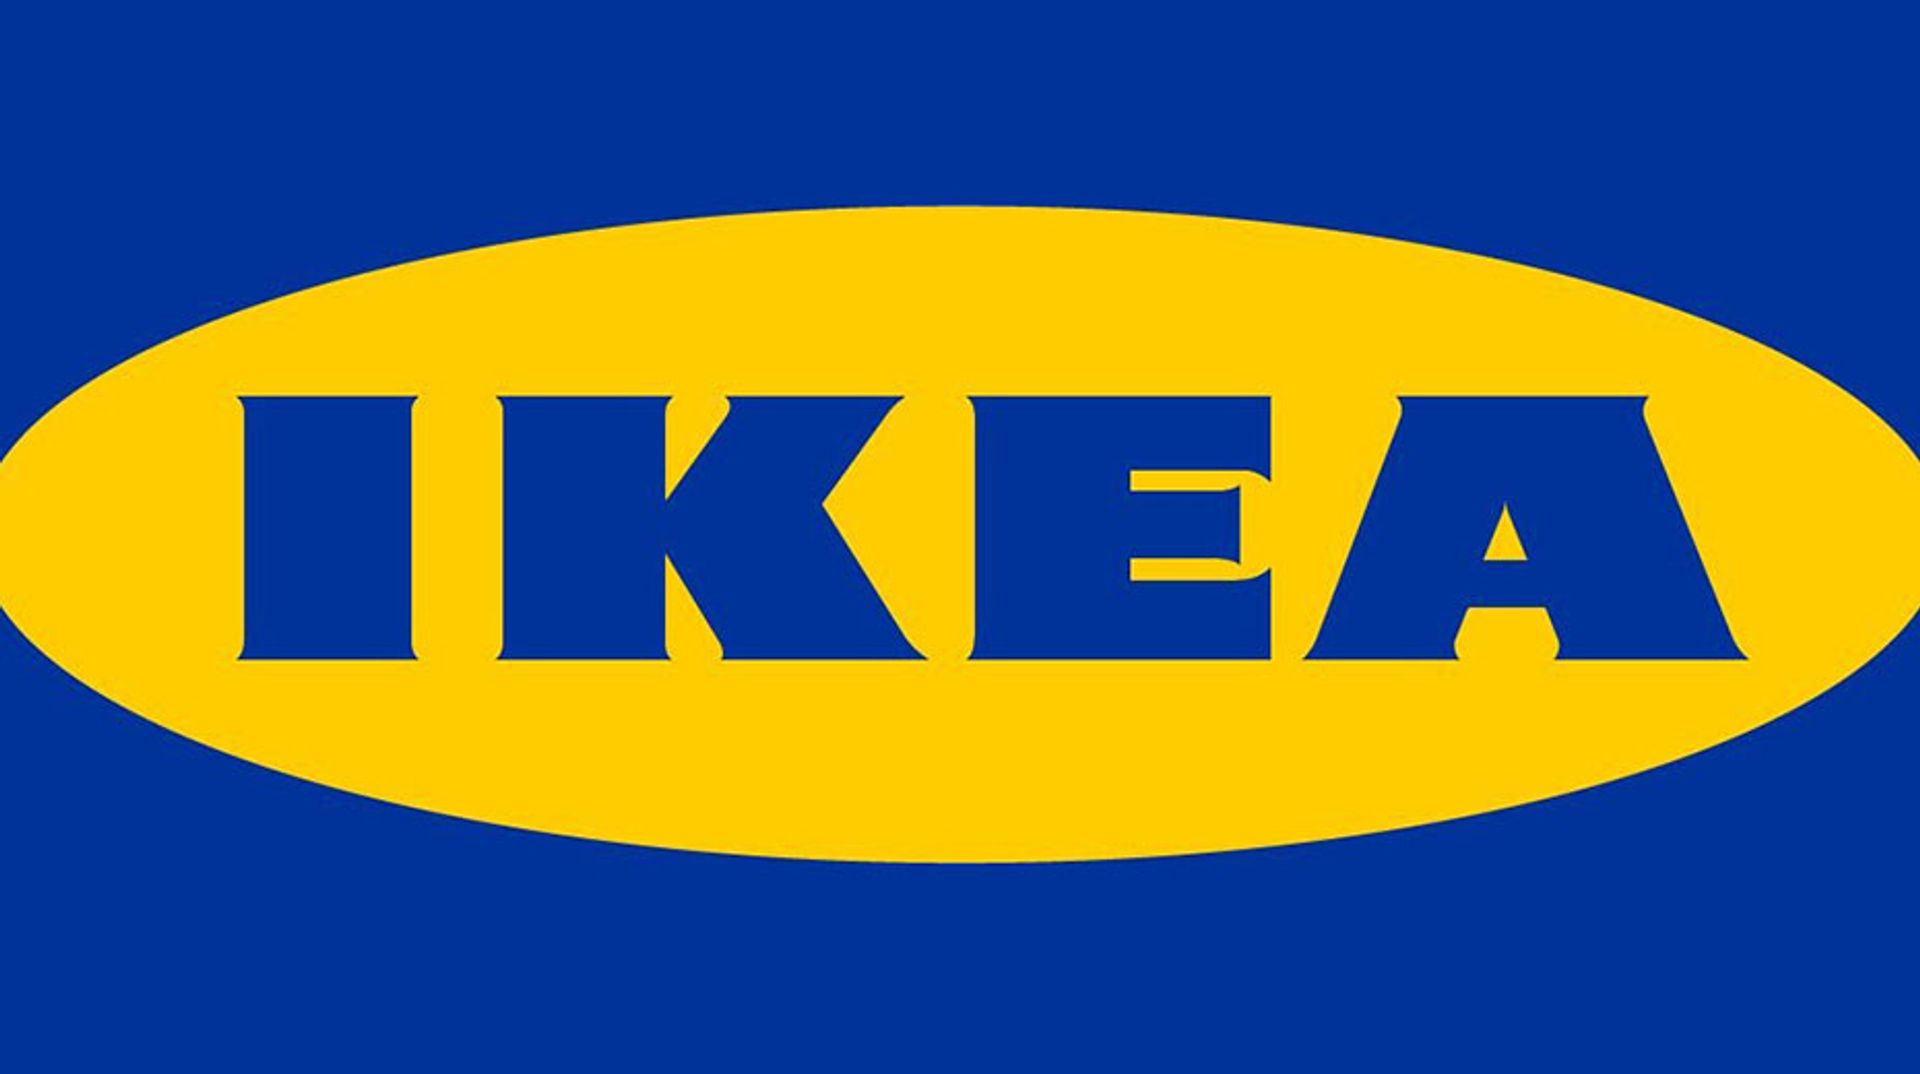 Roeispaan te ontvangen Lodge Veel klachten over producten en service Ikea' - Kassa - BNNVARA